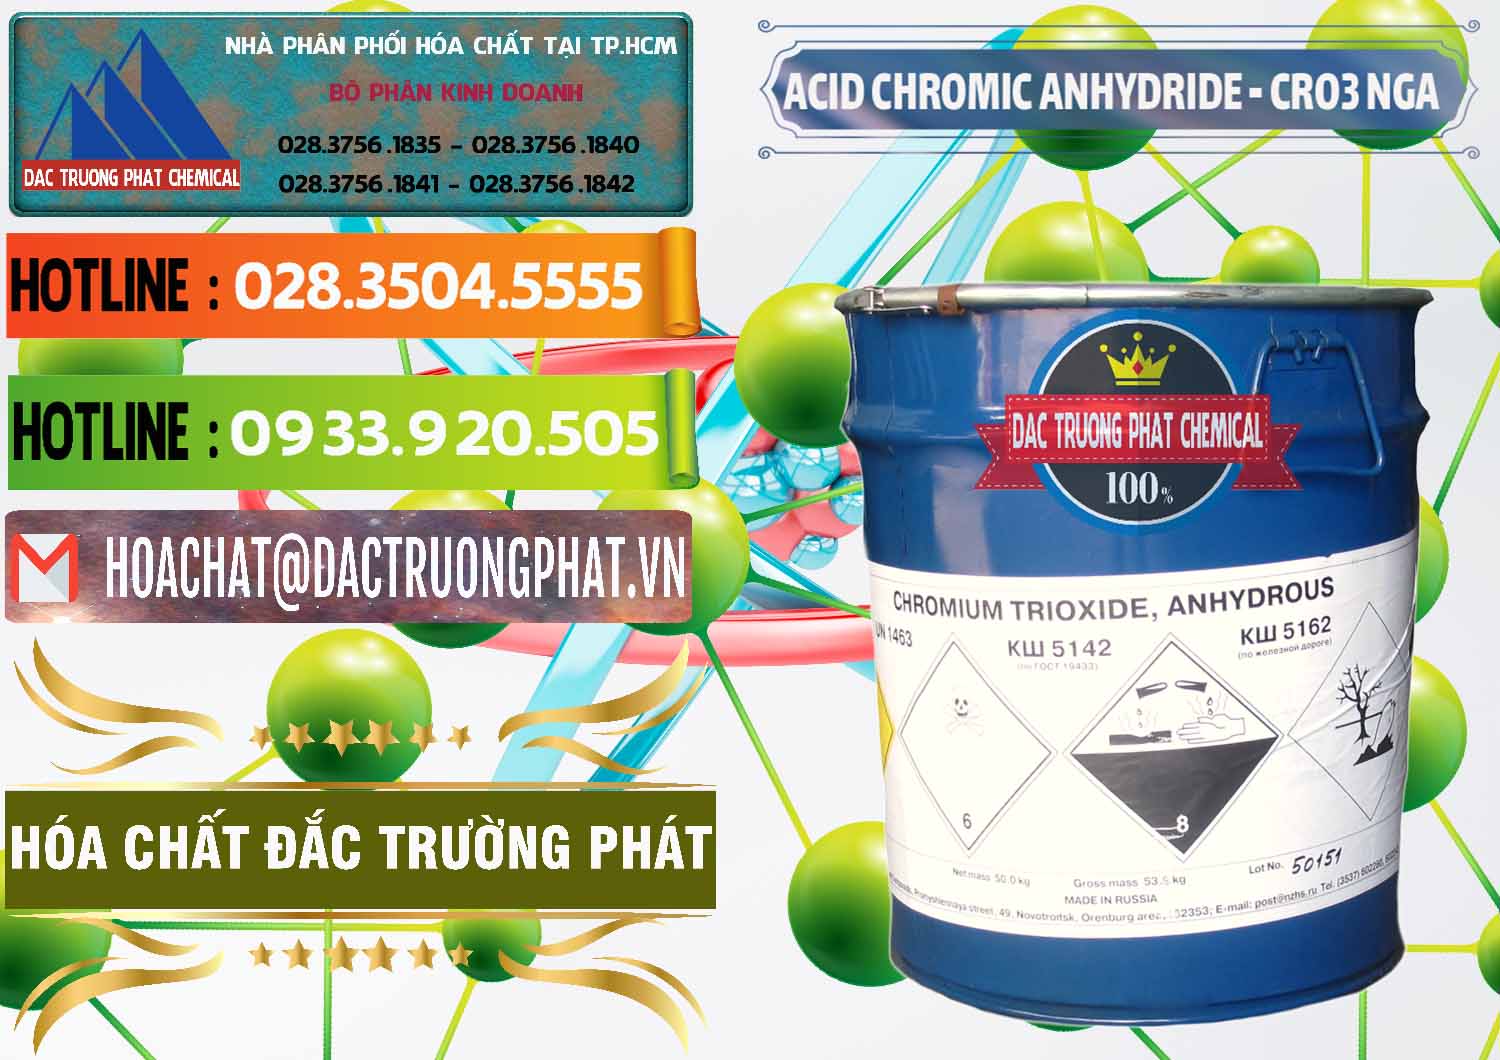 Đơn vị chuyên bán _ cung ứng Acid Chromic Anhydride - Cromic CRO3 Nga Russia - 0006 - Nơi chuyên phân phối và nhập khẩu hóa chất tại TP.HCM - cungcaphoachat.com.vn